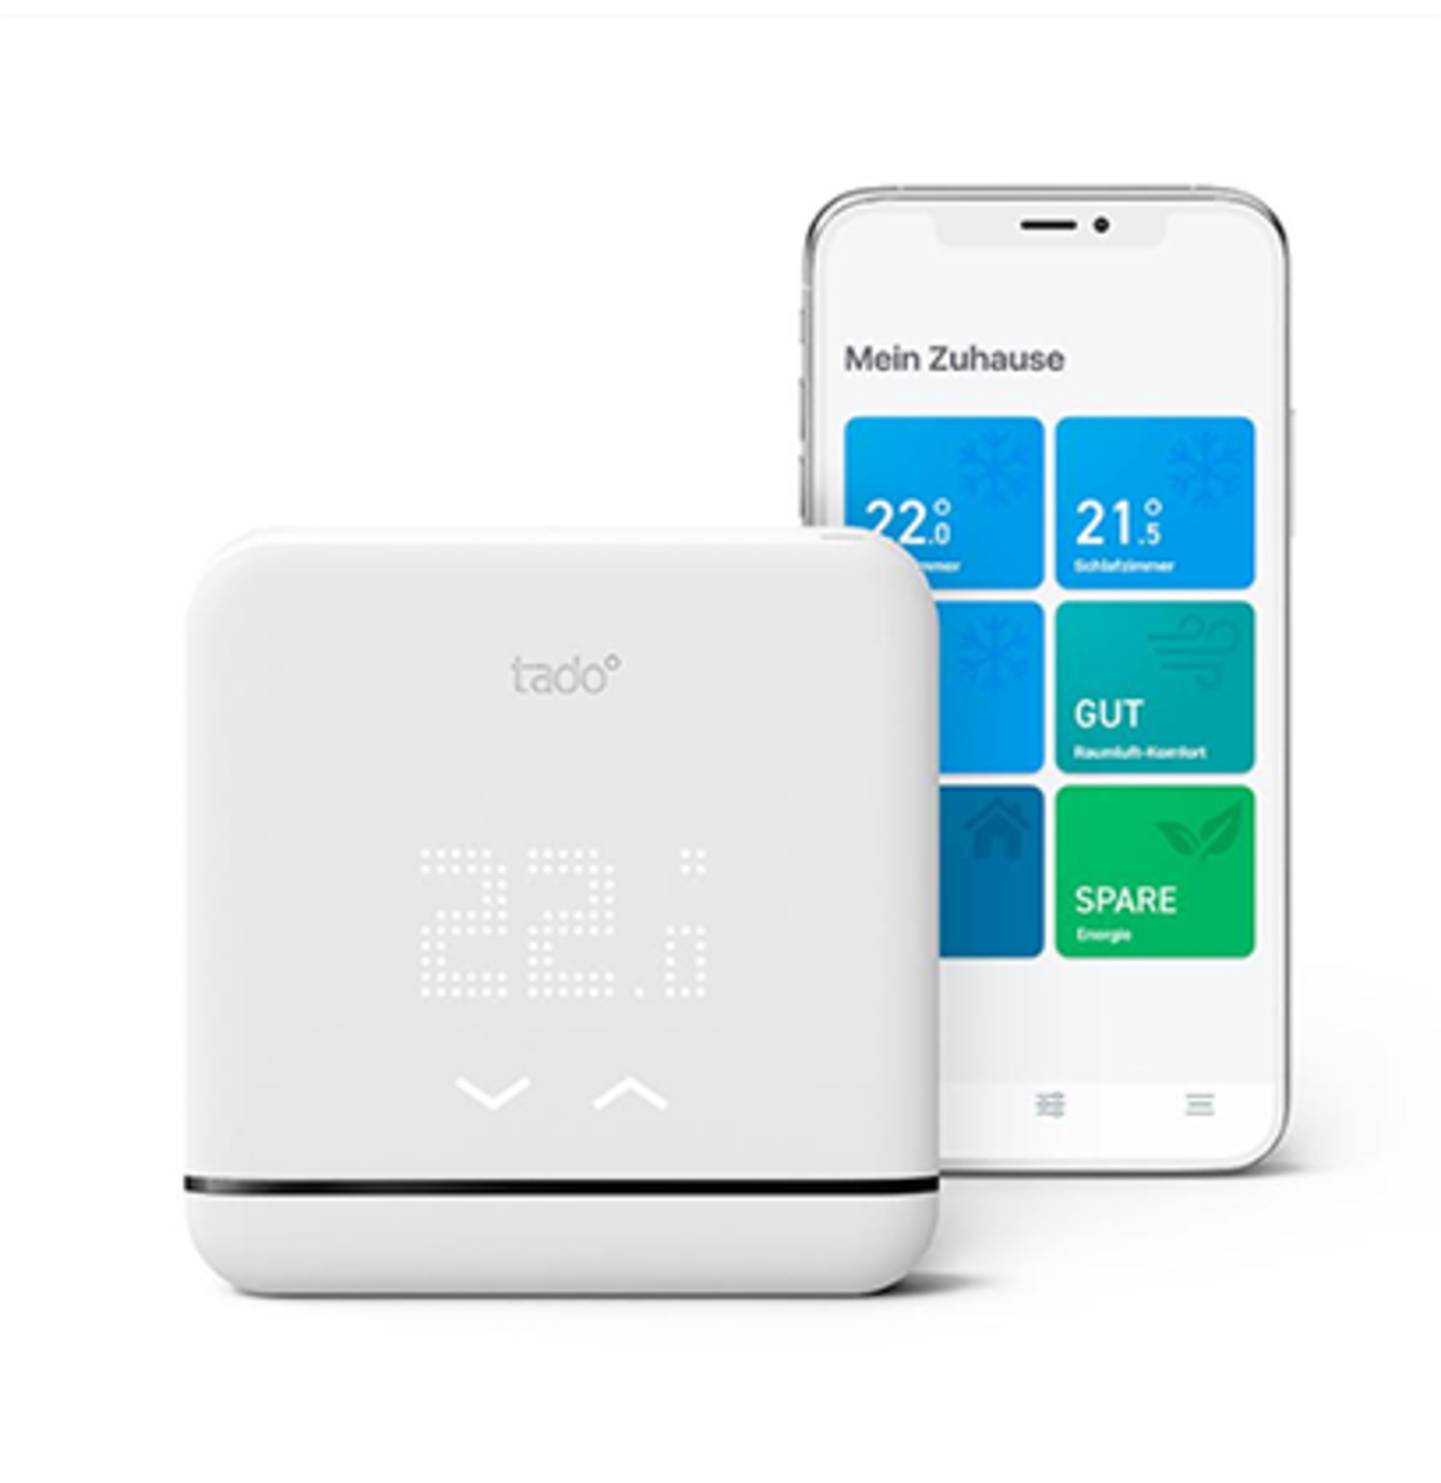 Tado - Das smarte Heizkörper-Thermostat